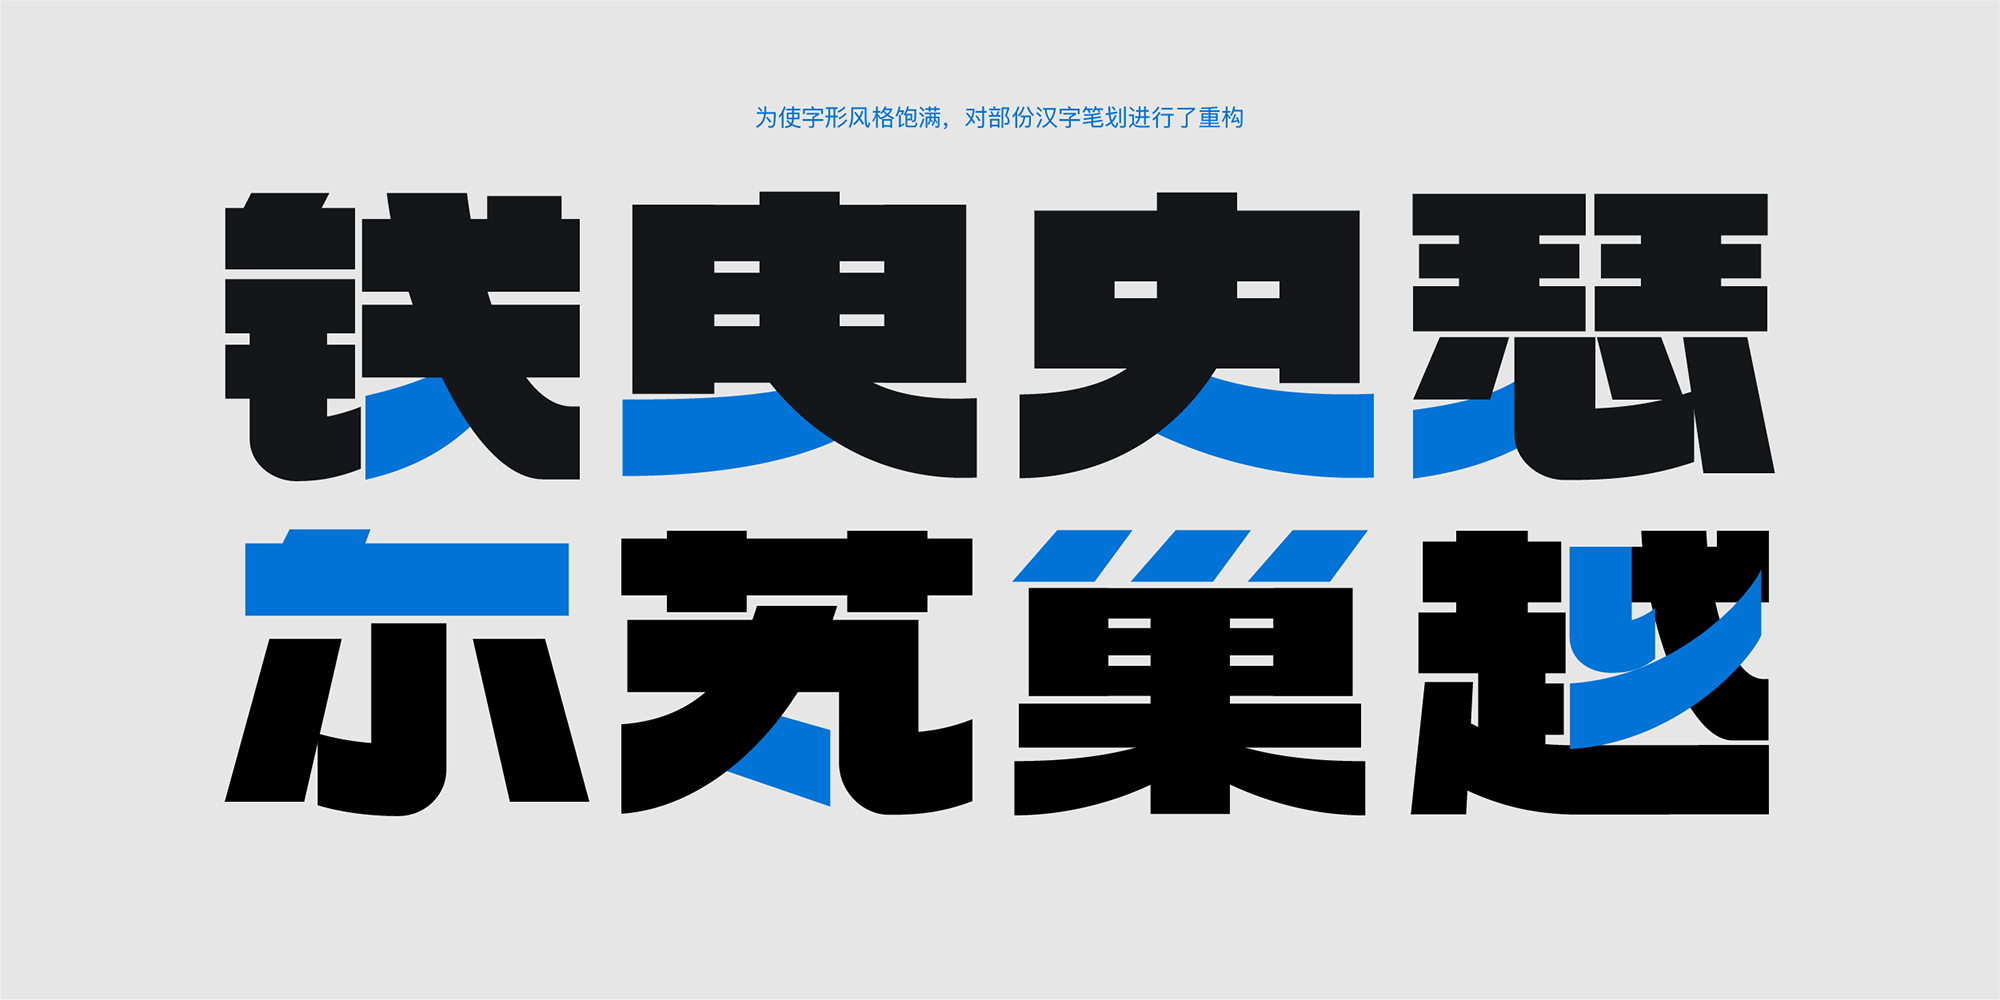 火山字型 浩海 (Modern+Retro)